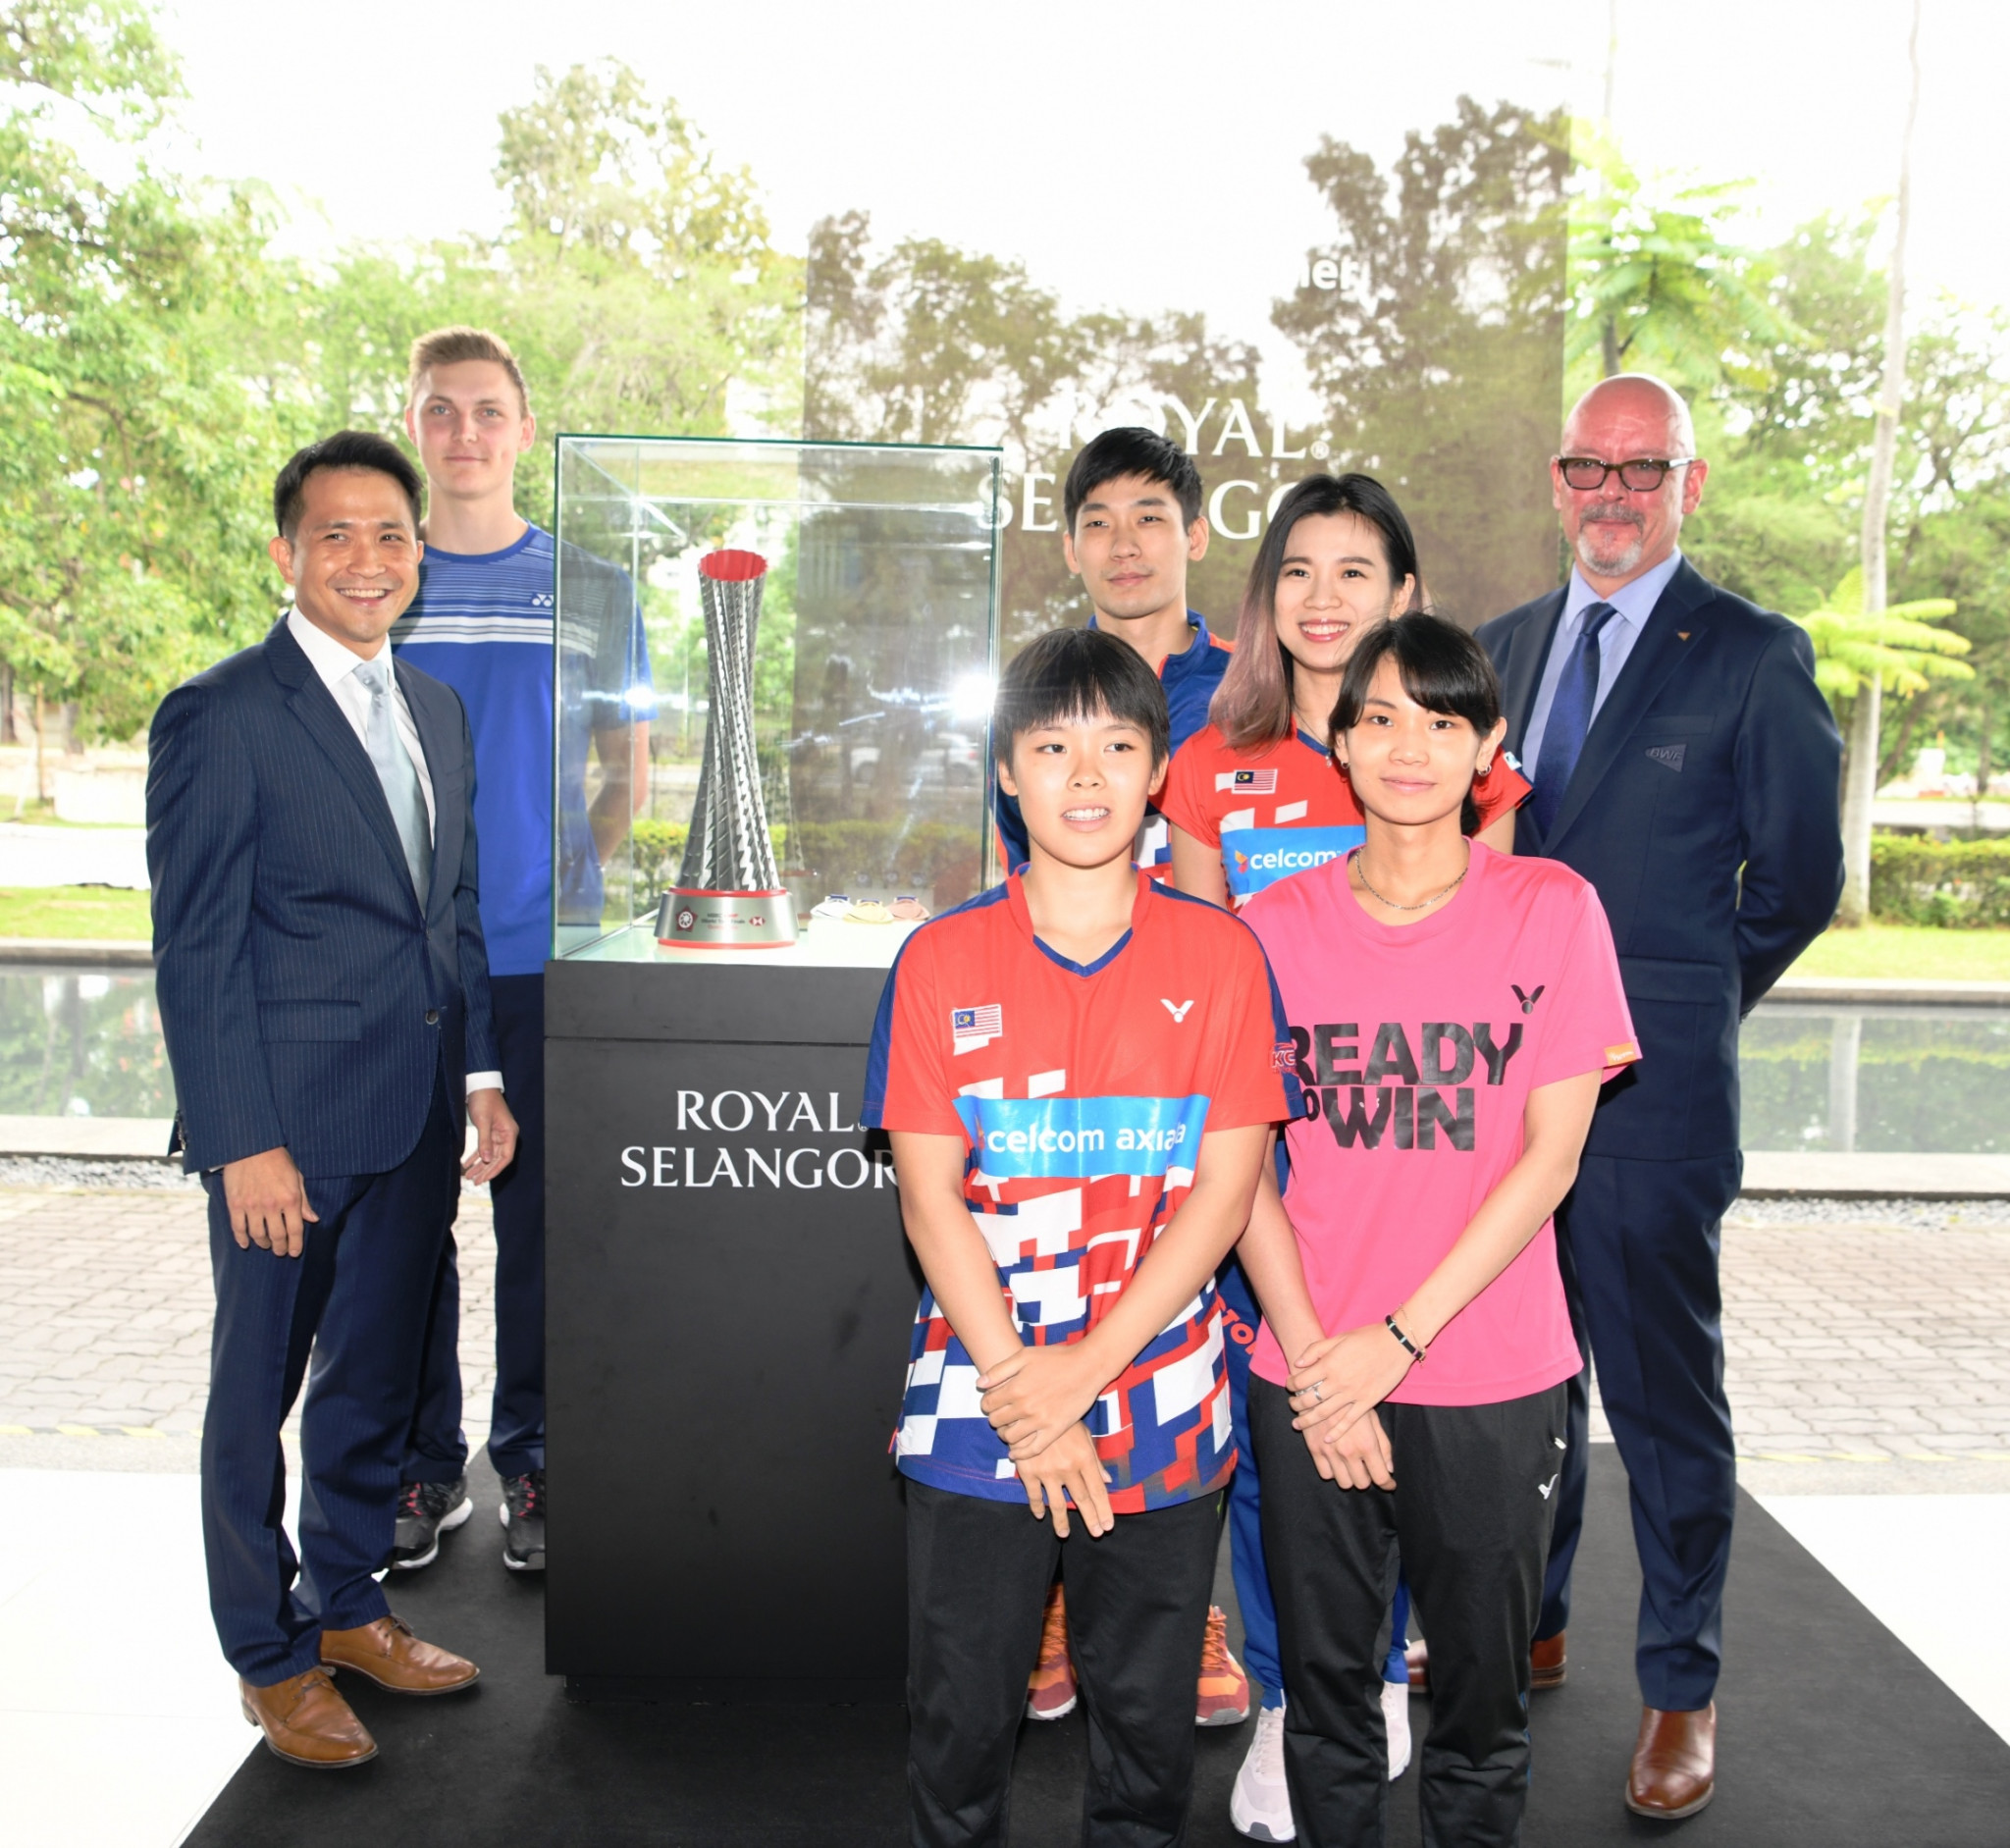 Royal Selangor named official trophy partner of HSBC BWF World Tour Finals